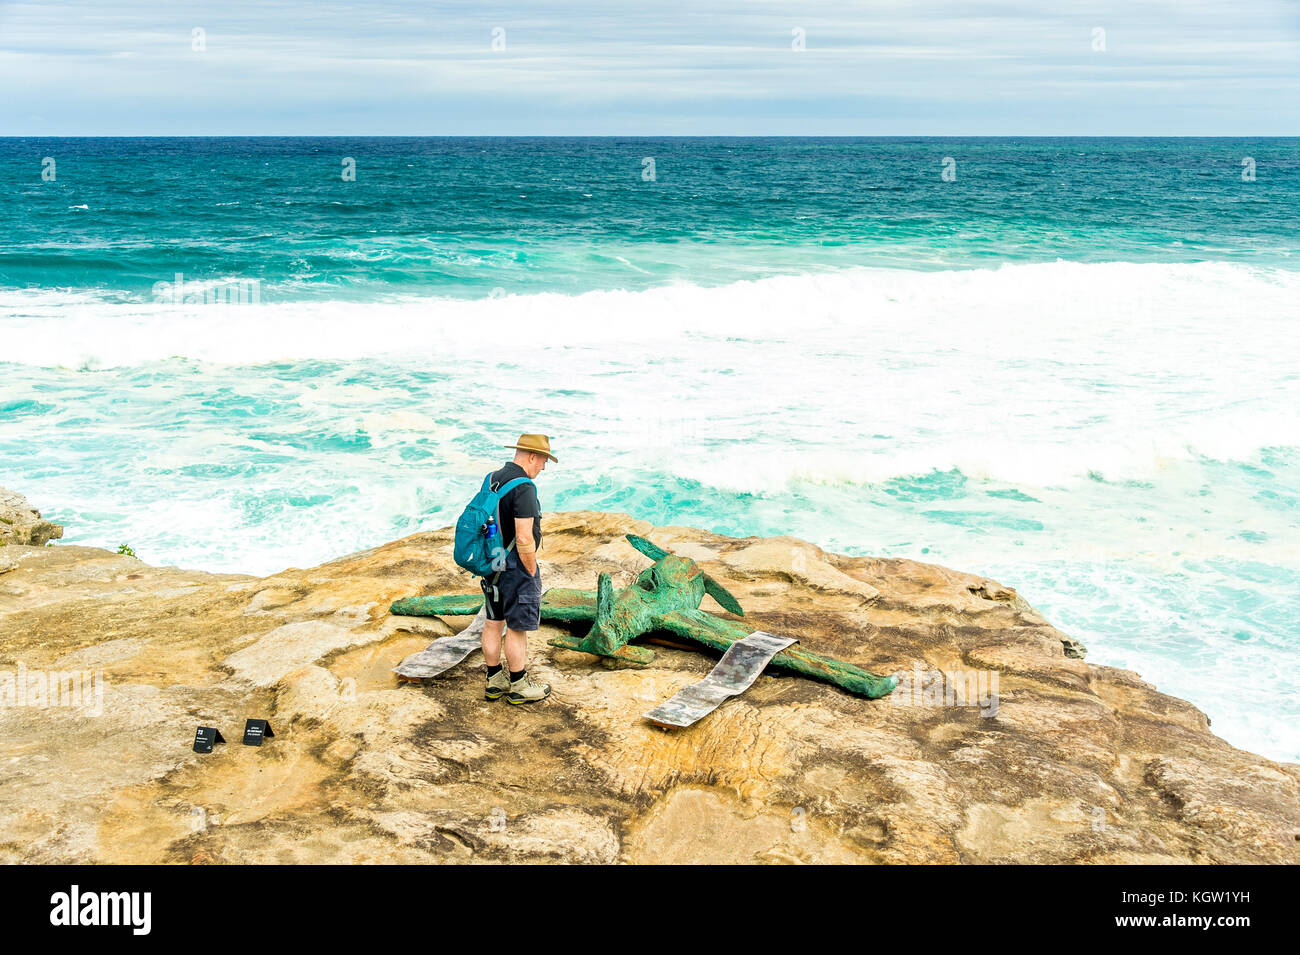 Un turista admira Stephen Harrison's ilustraciones titulado 'Molly y Charles' durante el 2017 esculturas en el mar cerca de Bondi Beach en Sydney Foto de stock